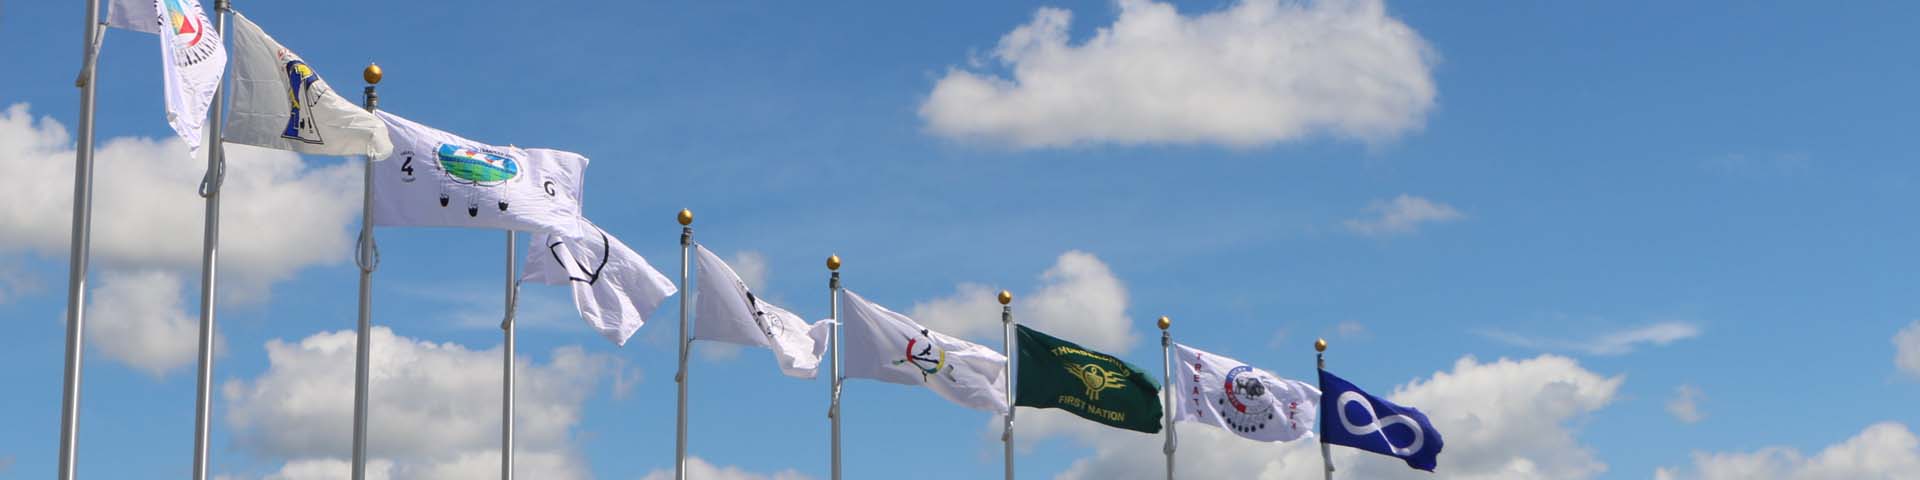 Plusieurs drapeaux au vent.